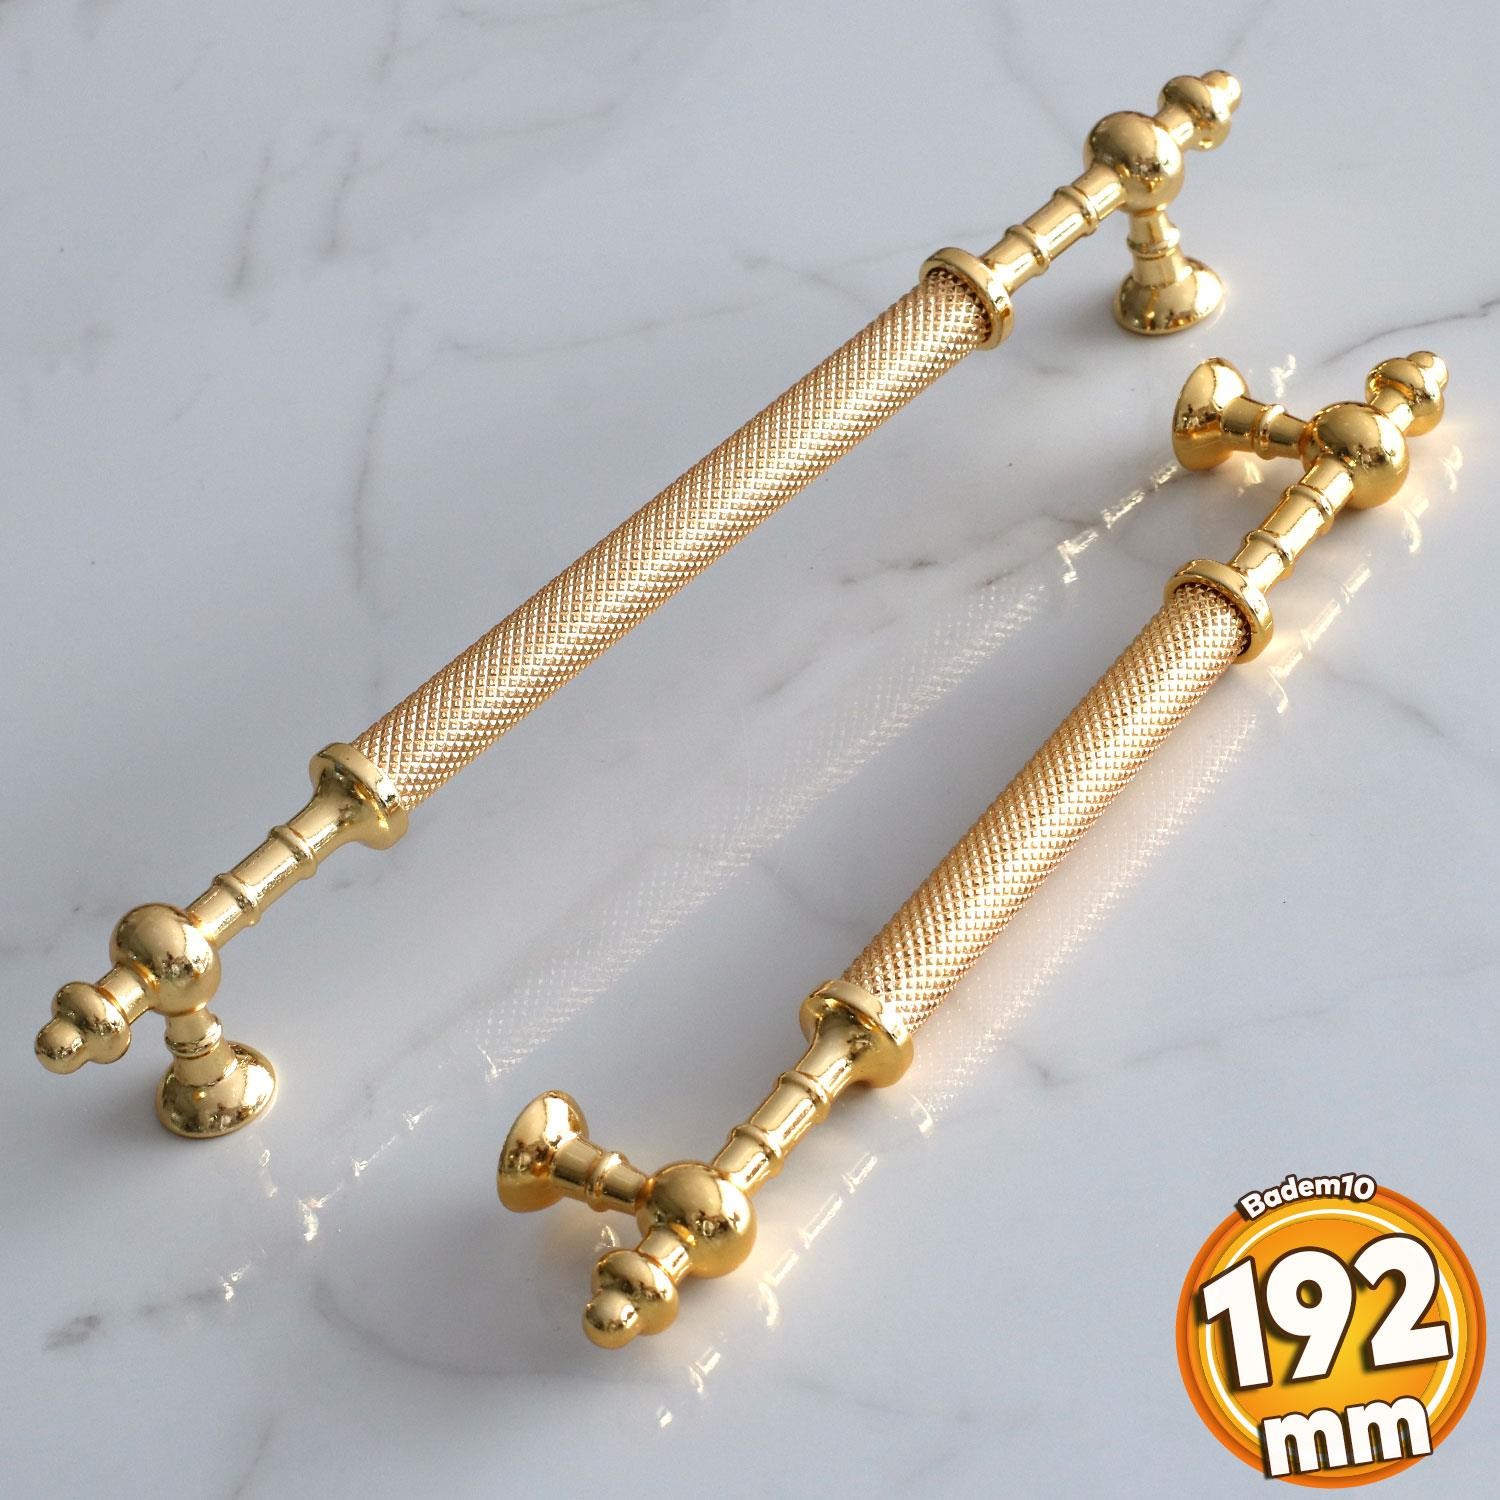 Ladin Altın Gold Metal Kulp 192 mm-19.2 cm Mobilya Mutfak Çekmece Dolabı Dolap Kapak Kulpları Kulbu